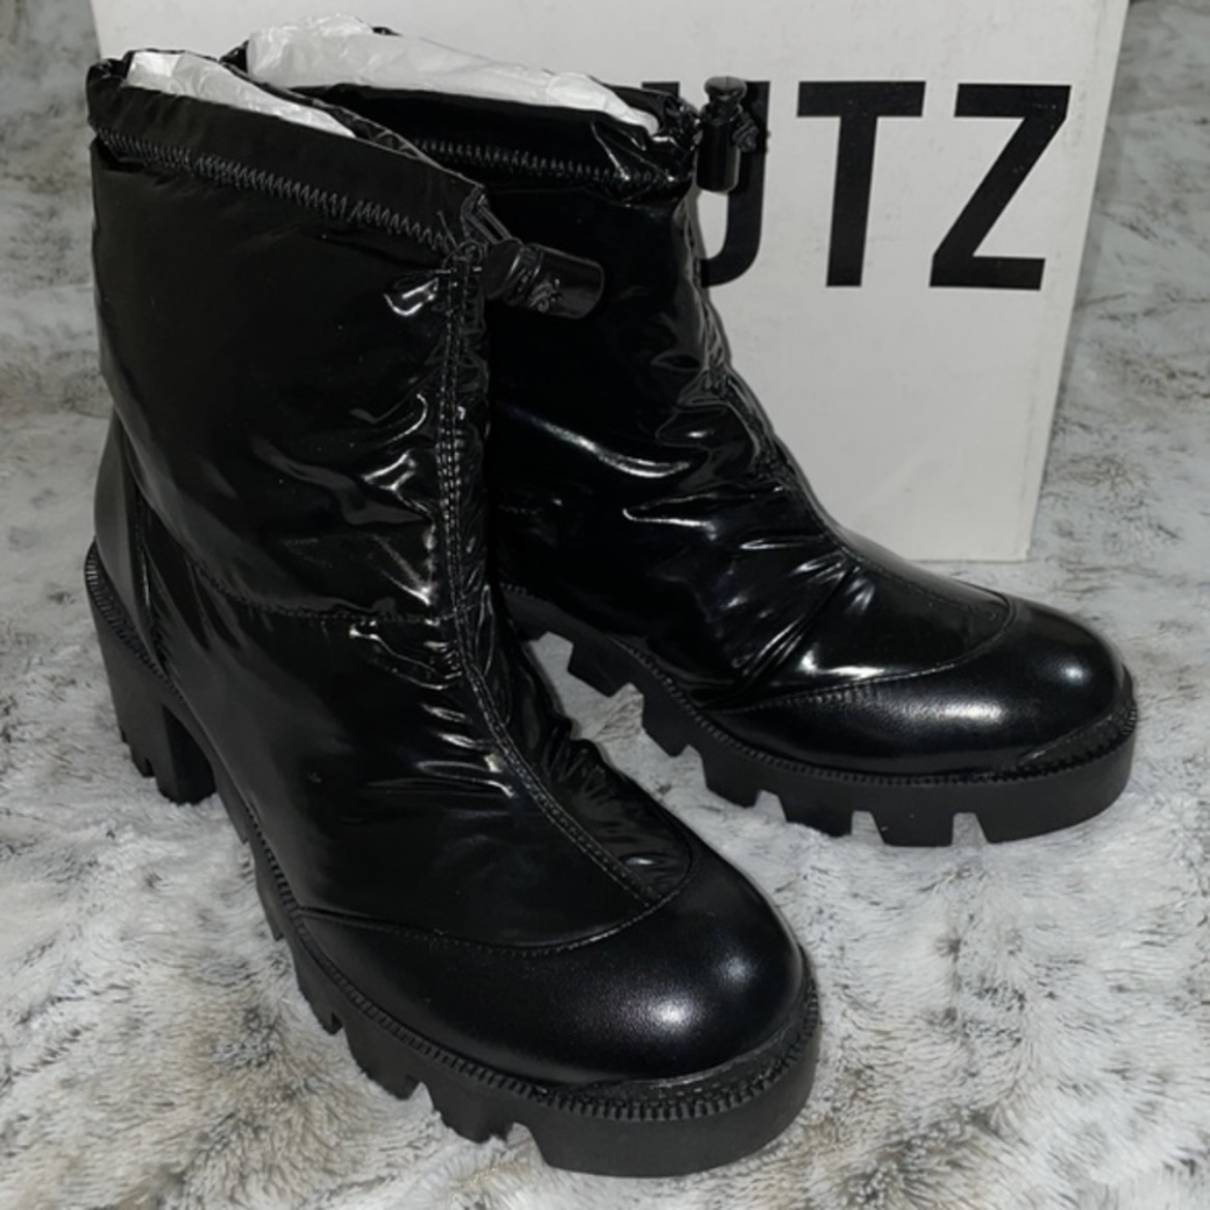 Luxury Schutz Ankle boots Women